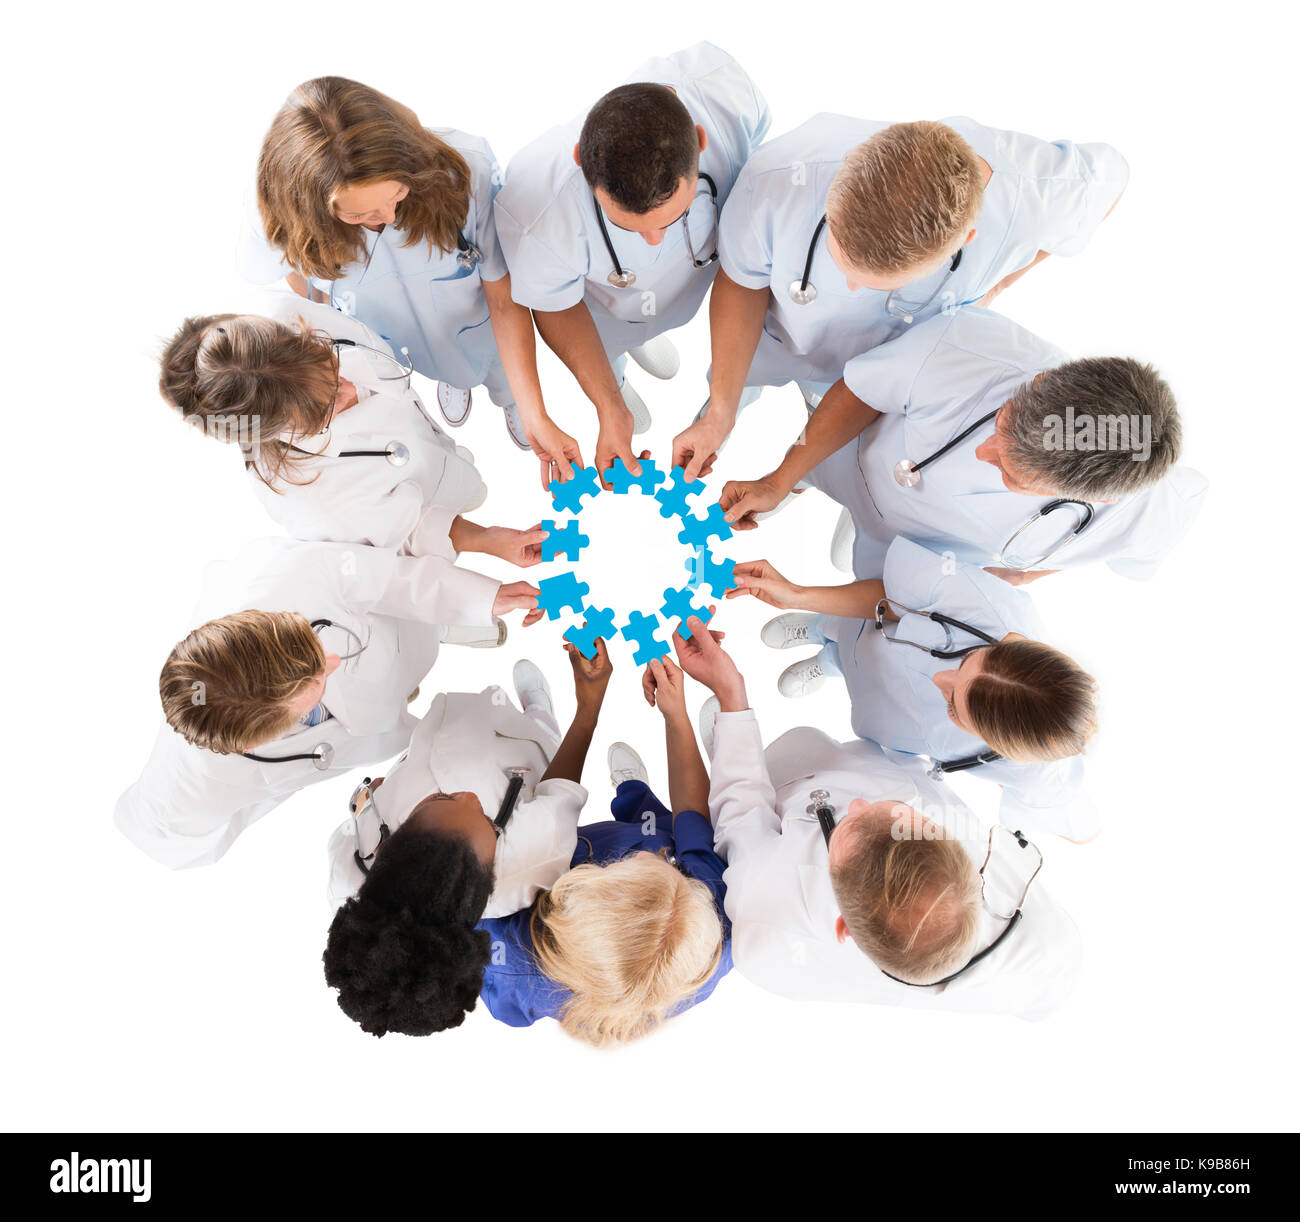 Direttamente sopra il colpo del team medico unire pezzi sagomati azzurri contro uno sfondo bianco Foto Stock